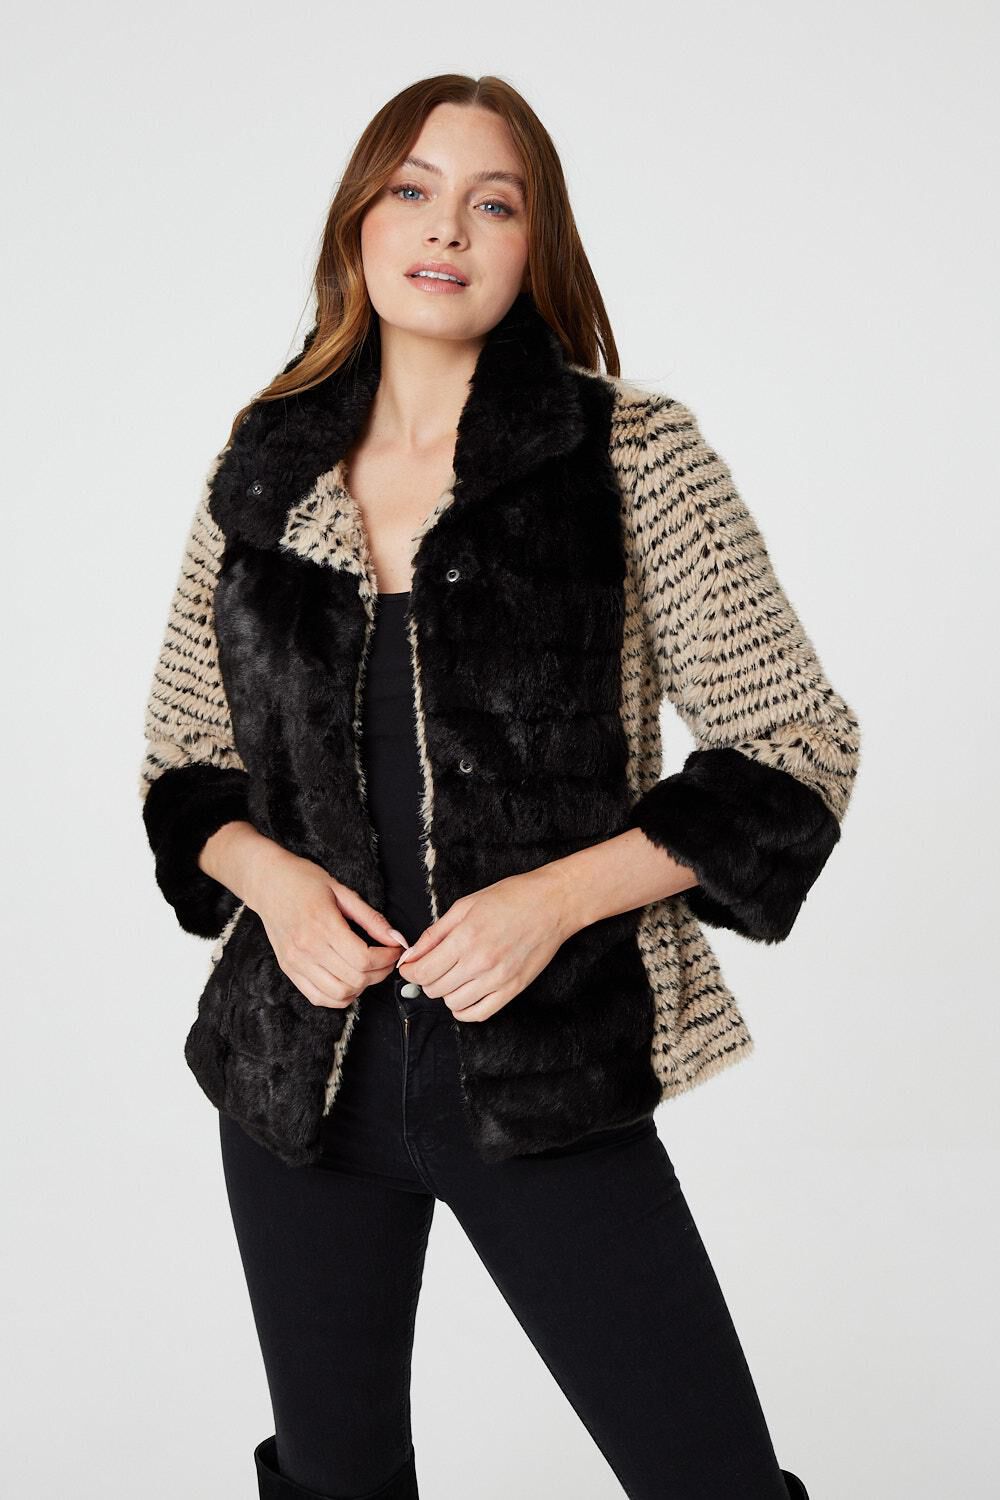 Izabel London Women’s Black and Beige Striped Faux Fur 3/4 Sleeve Jacket, Size: 18